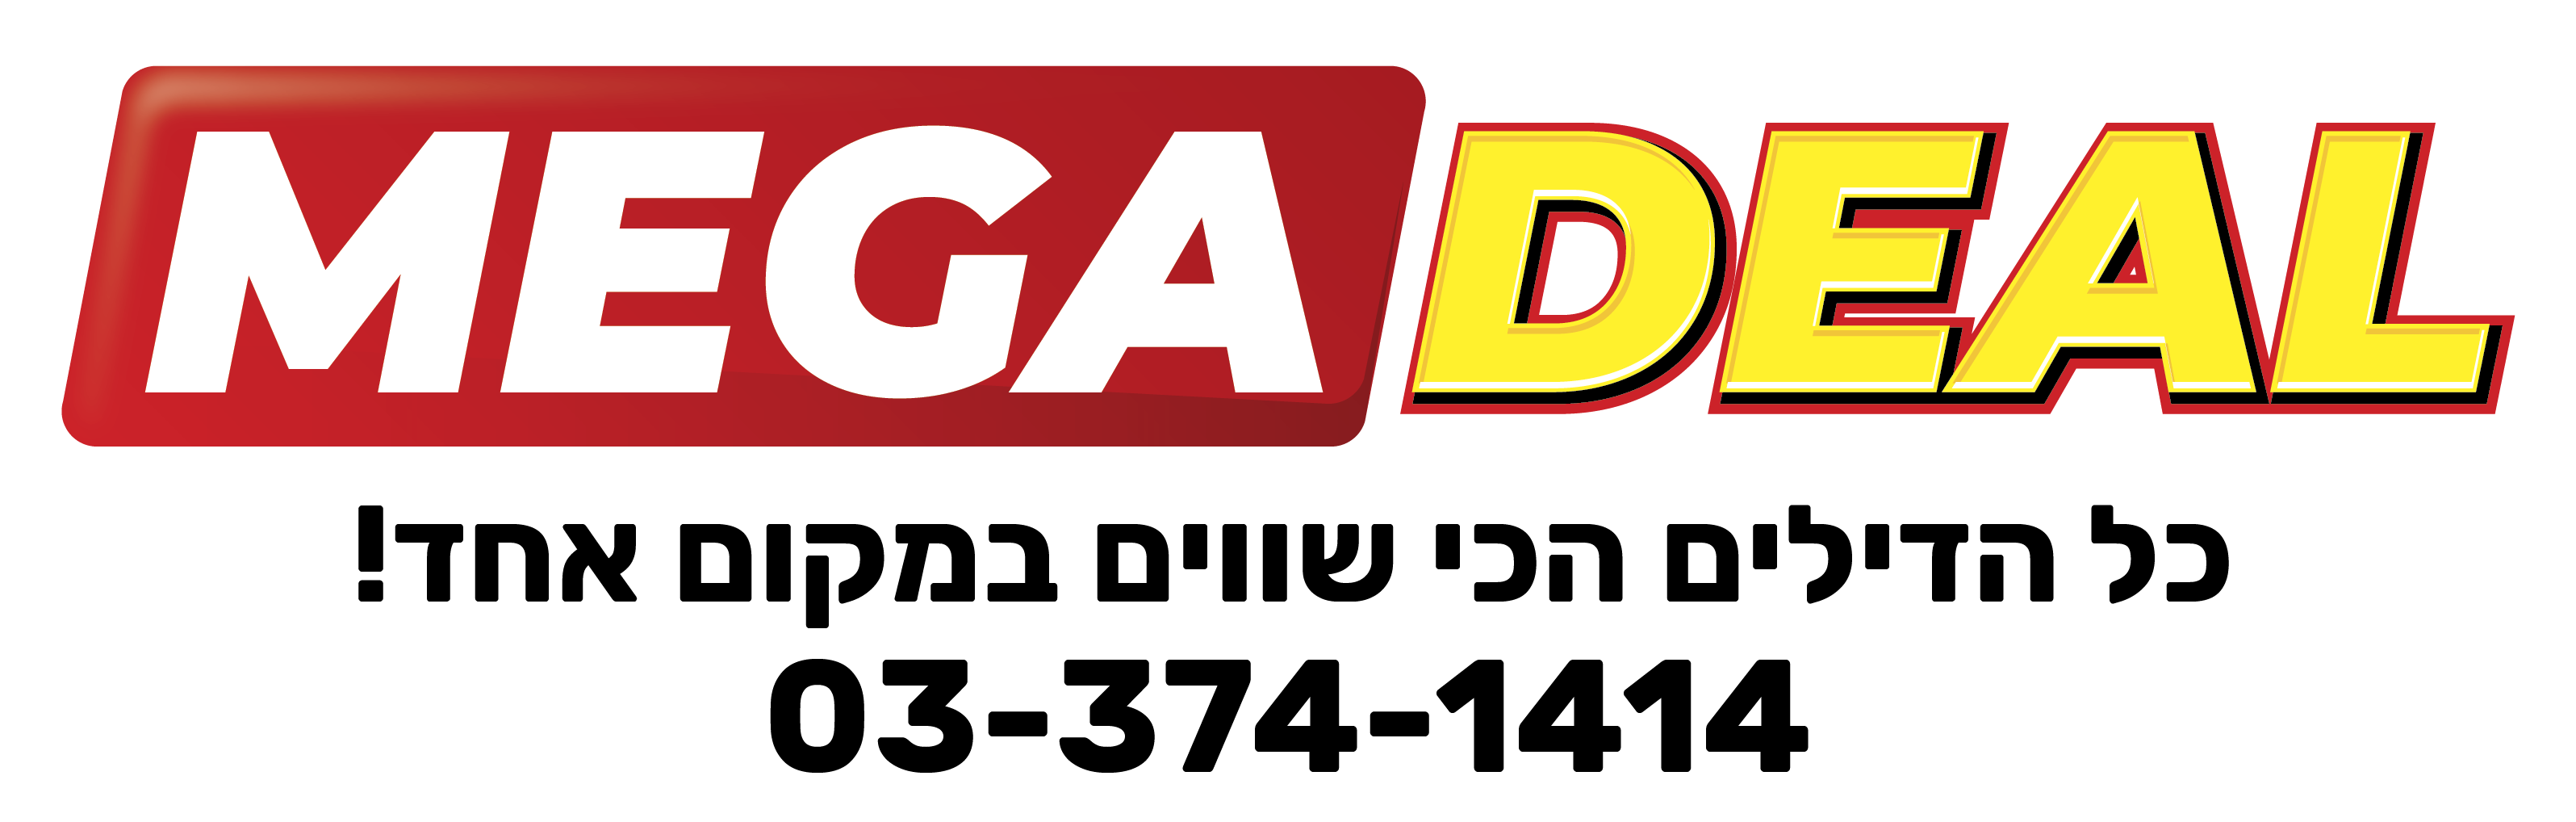 מגה דיל – MegaDeal